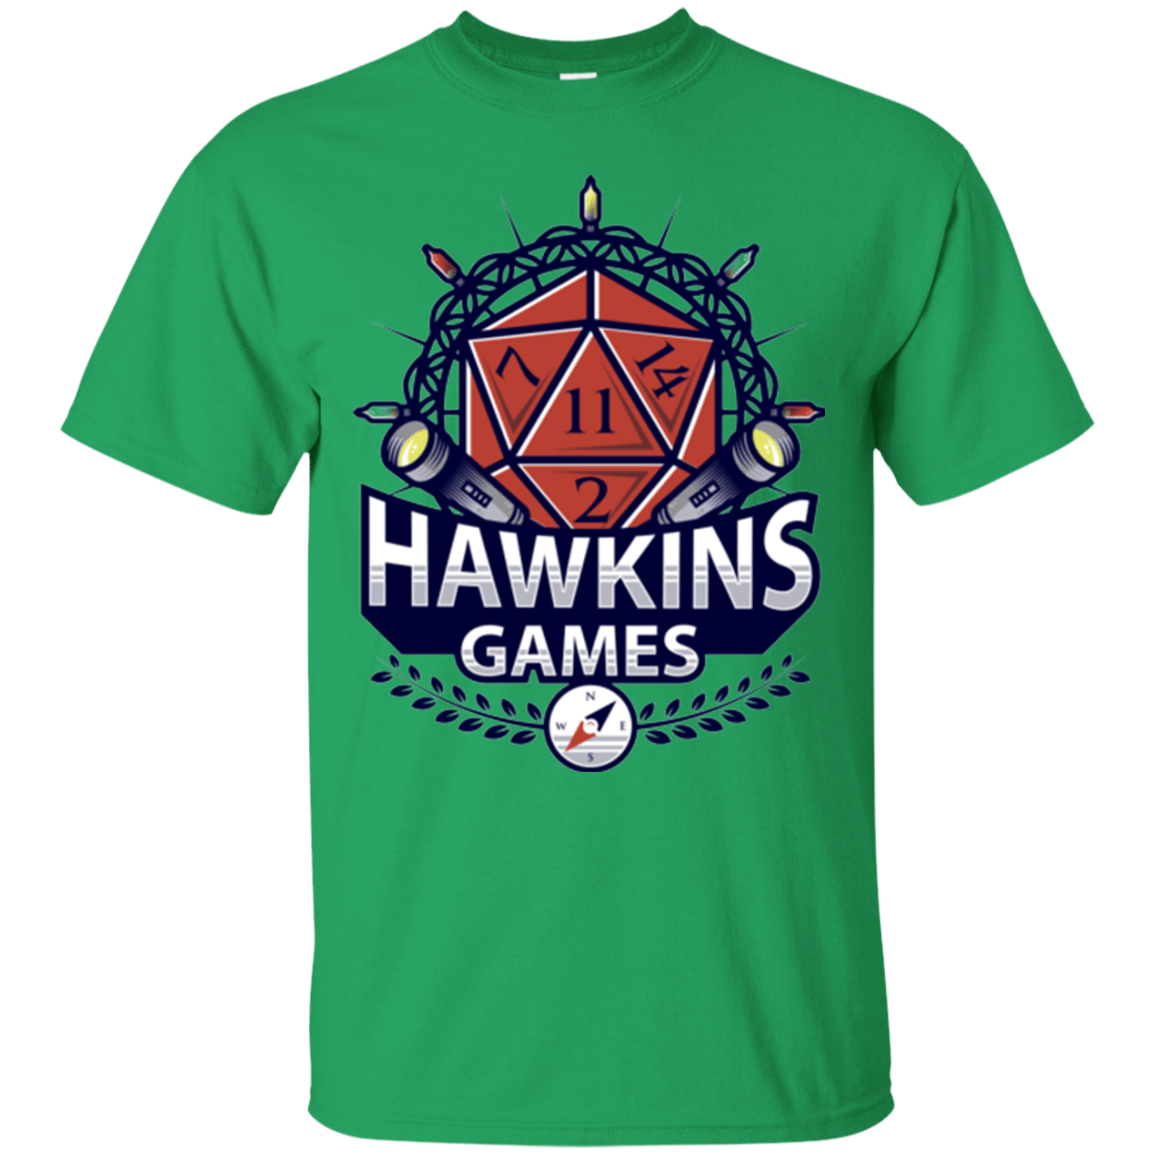 T-Shirts Irish Green / Small Hawkins Games T-Shirt